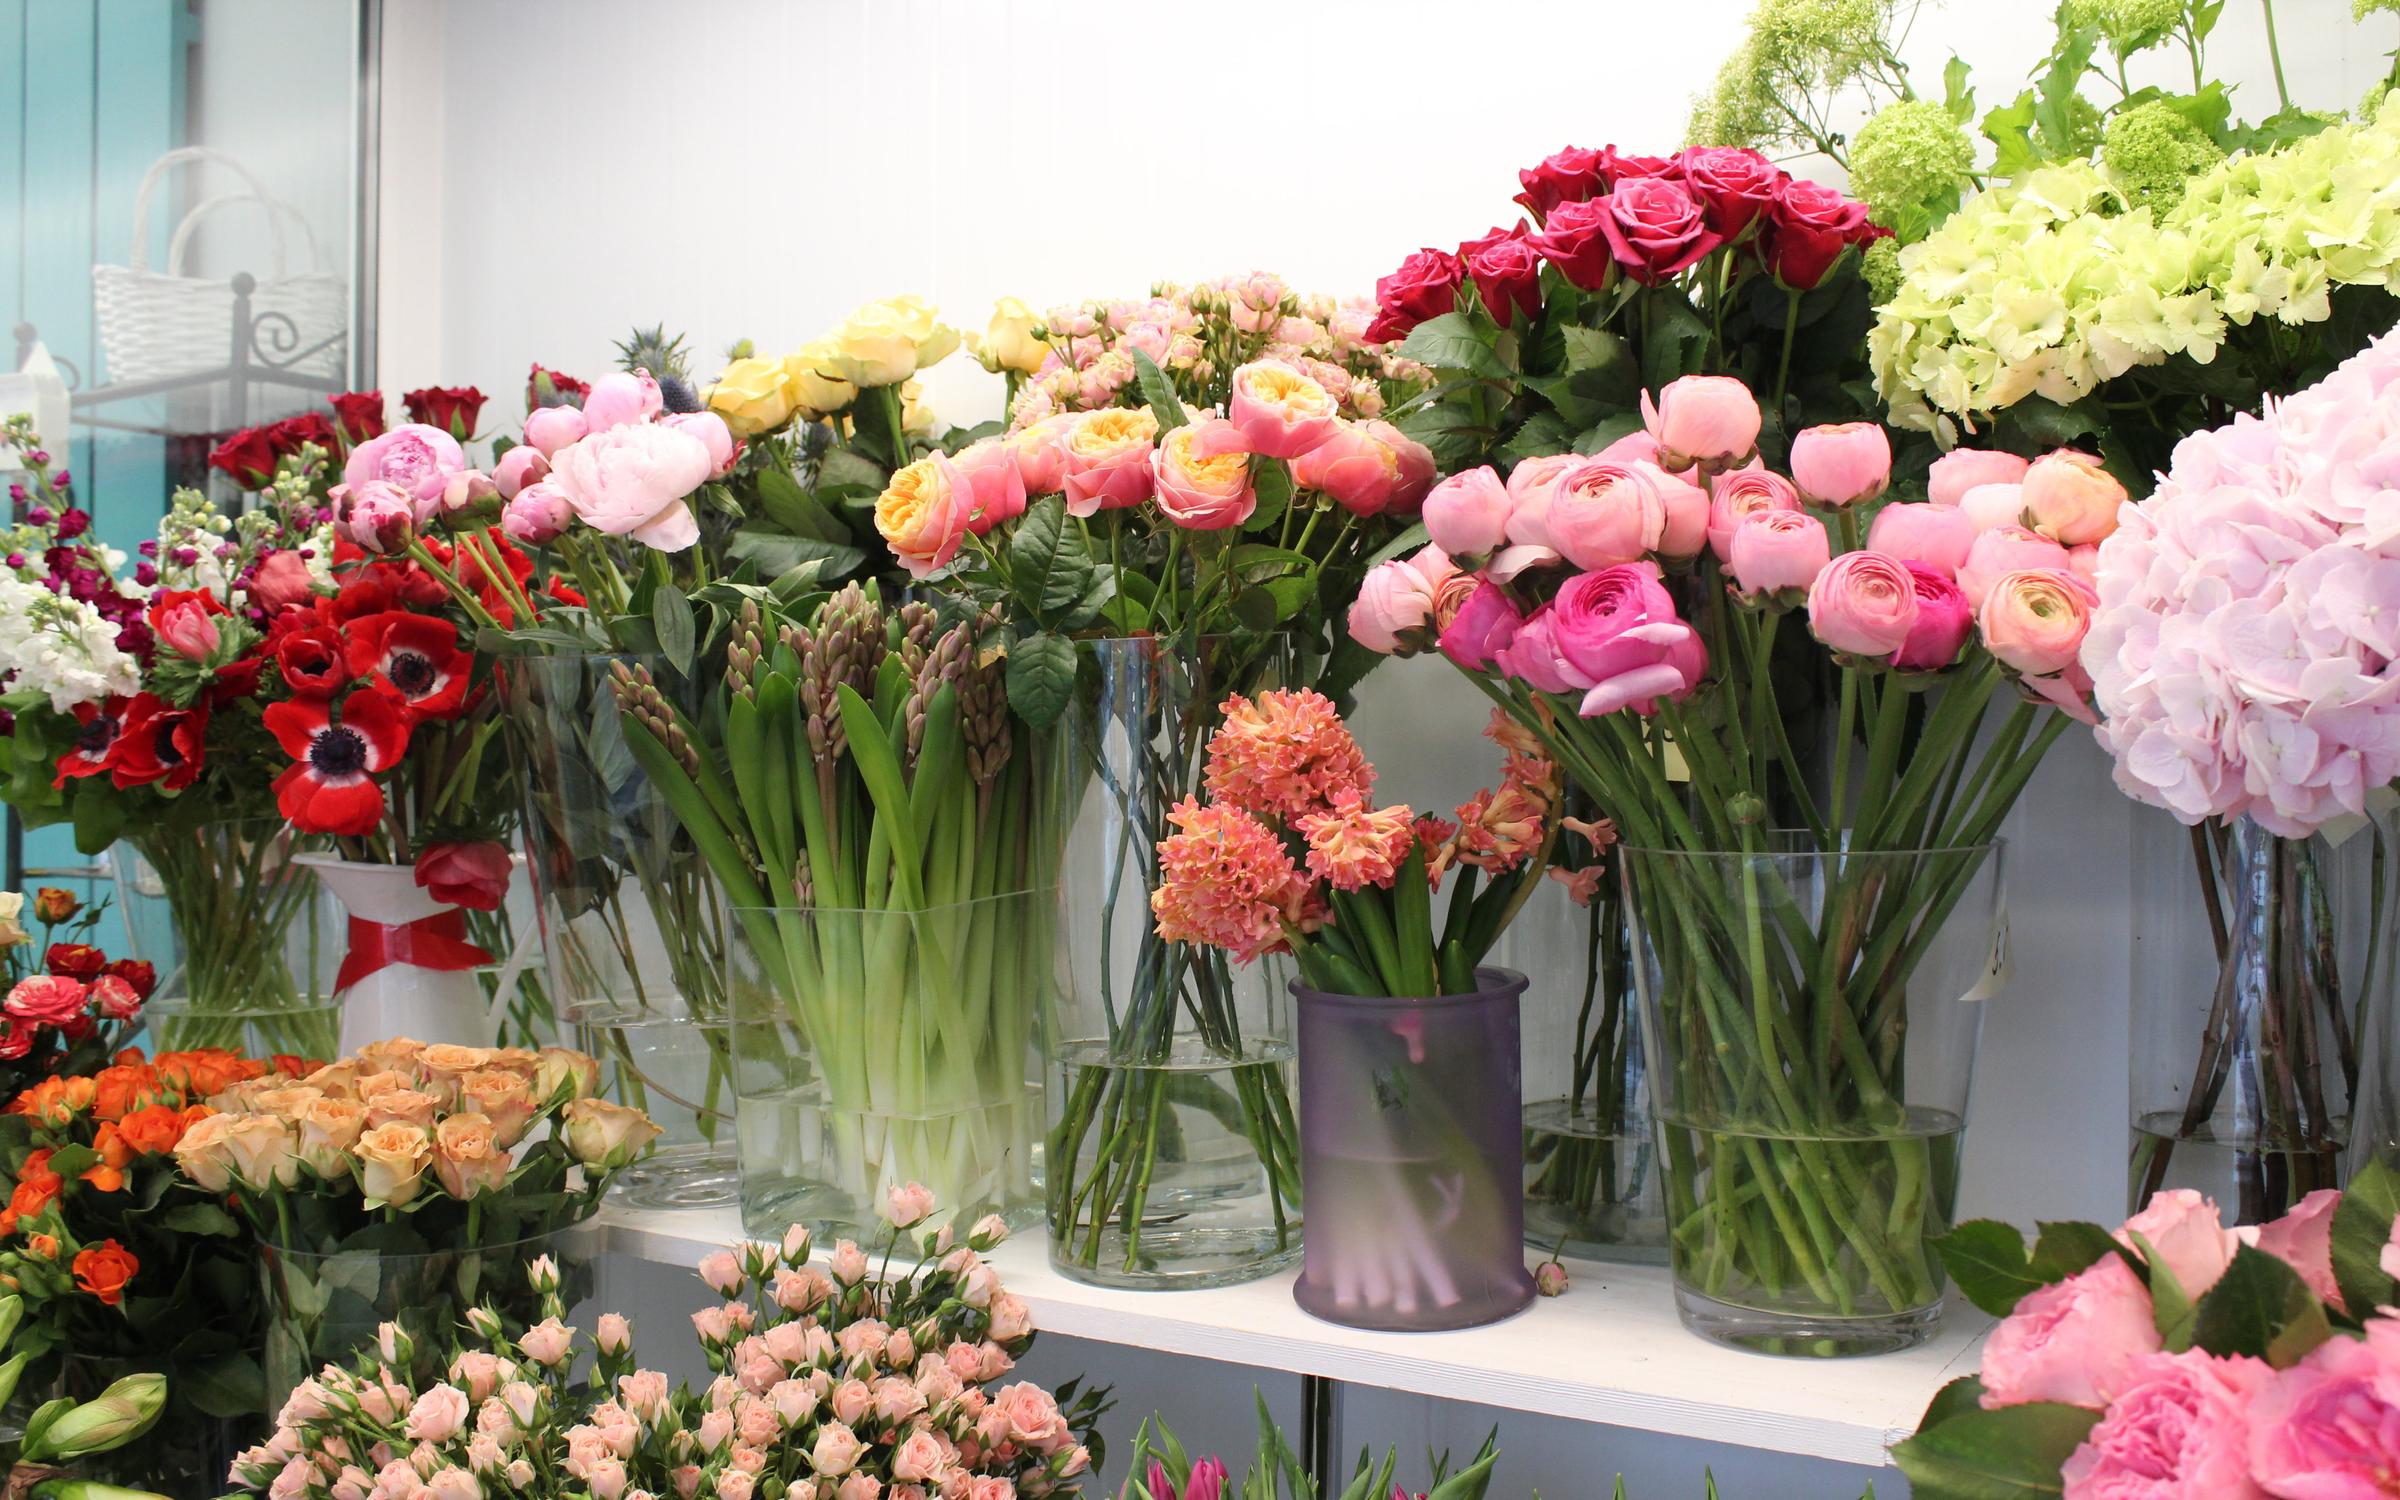 Купить цветы в егорьевске. Цветочный салон. Цветы в магазине. Цветочный бульвар. Интерьер цветочного магазина.